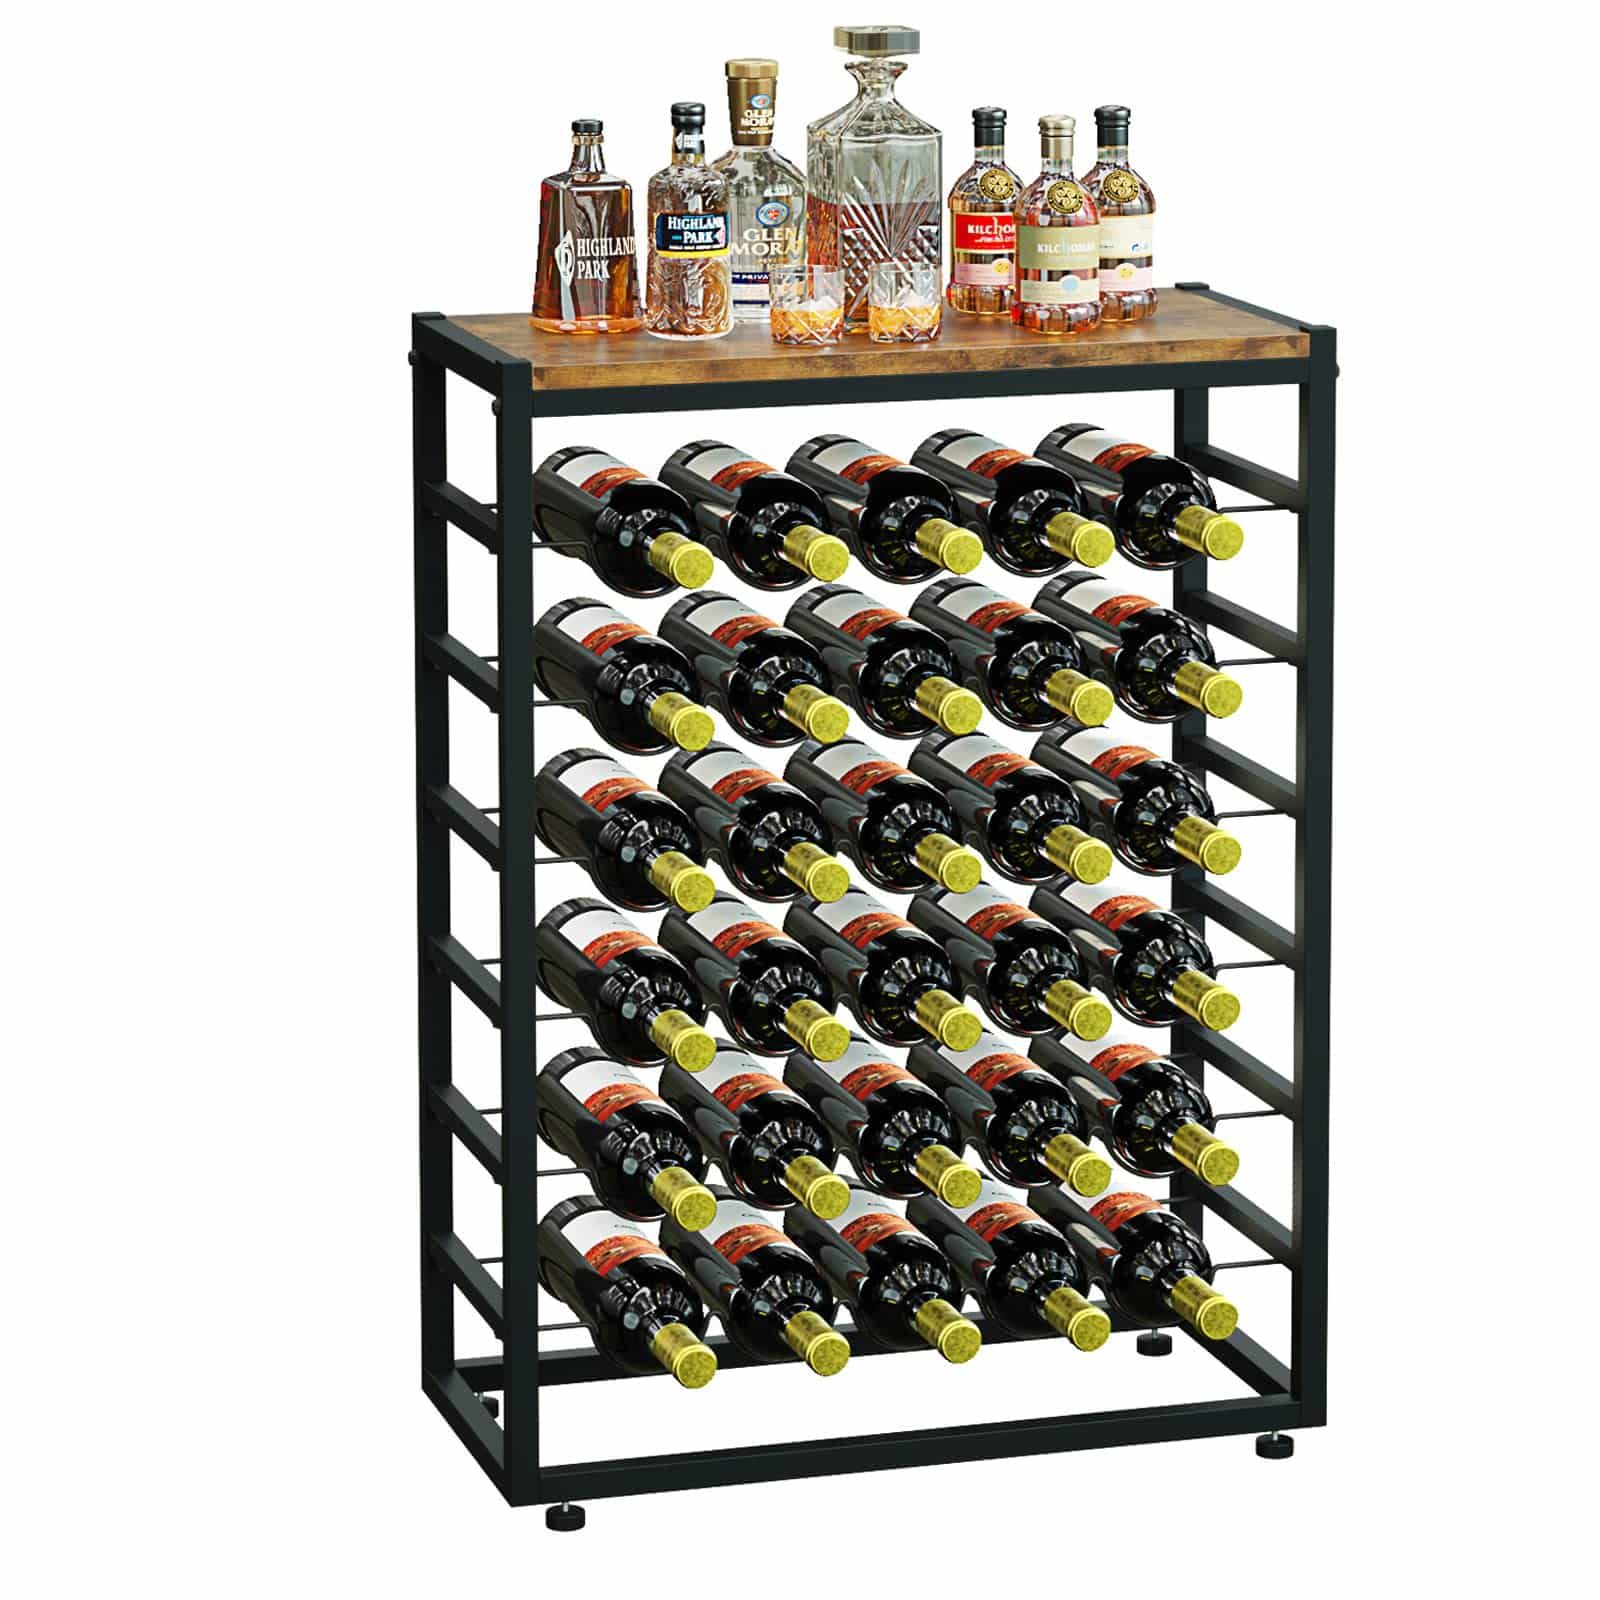 YOLEO Wine Rack